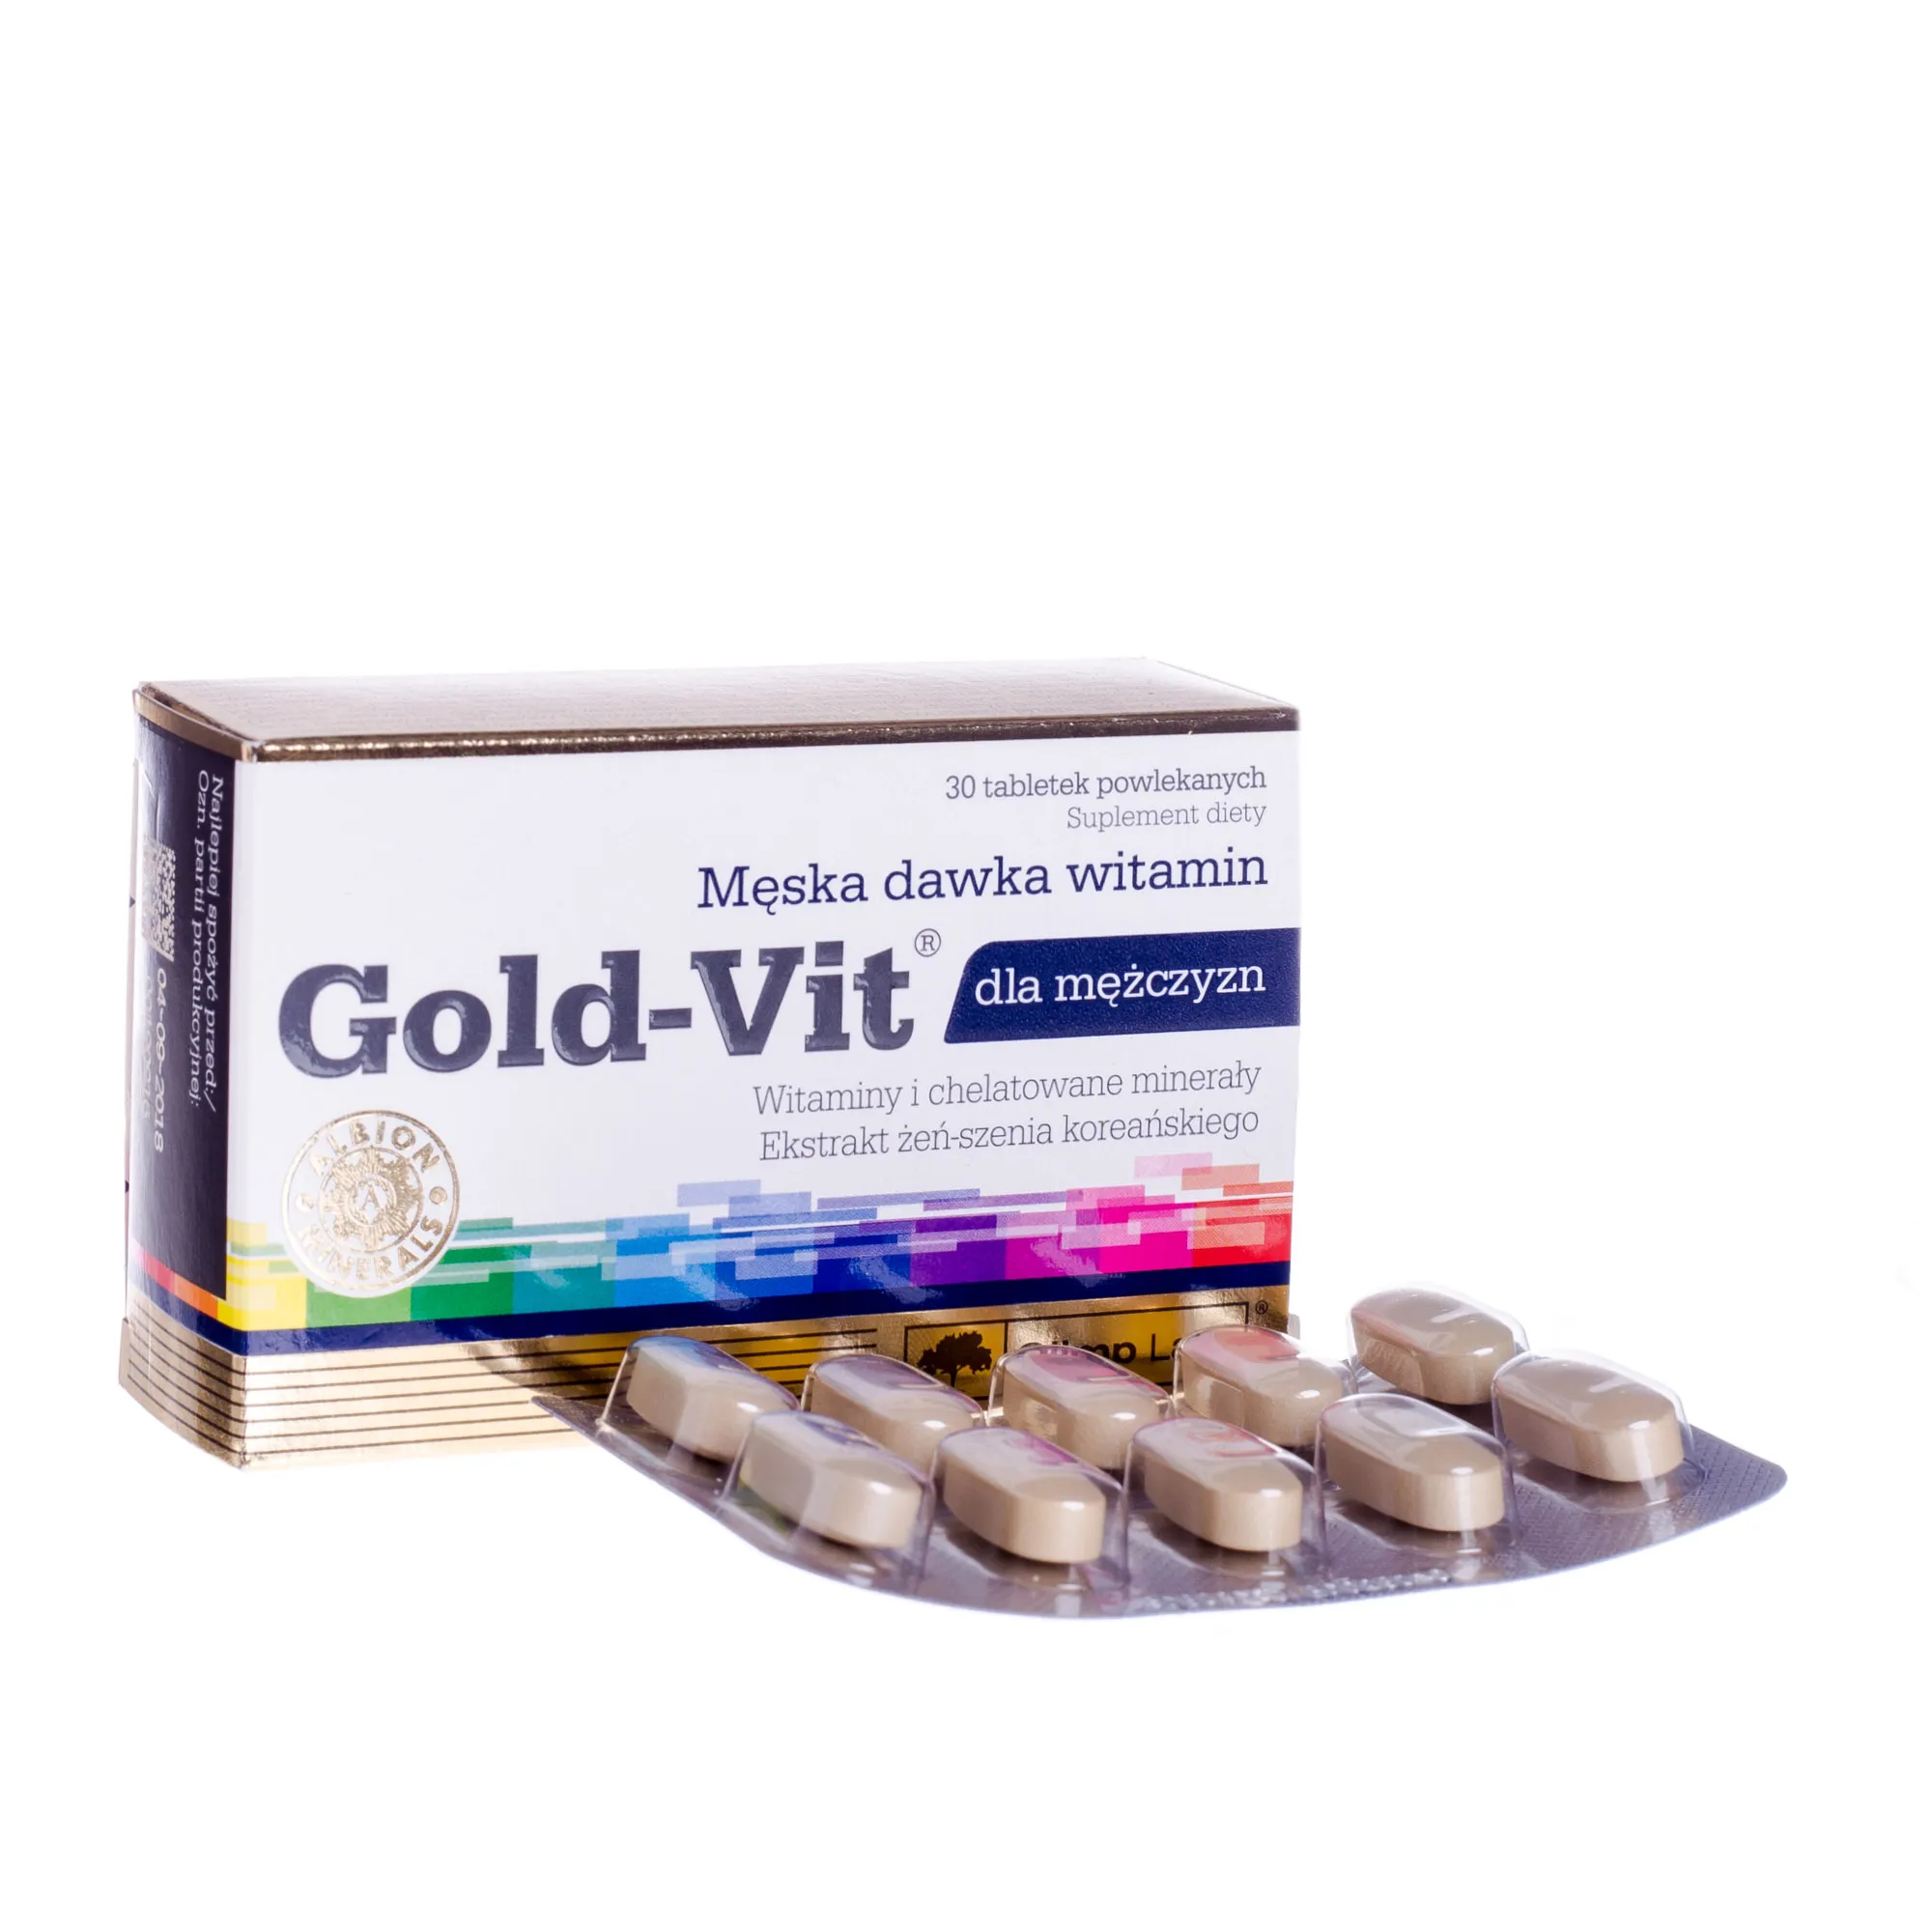 Olimp Gold-Vit dla mężczyzn, 30 tabletek